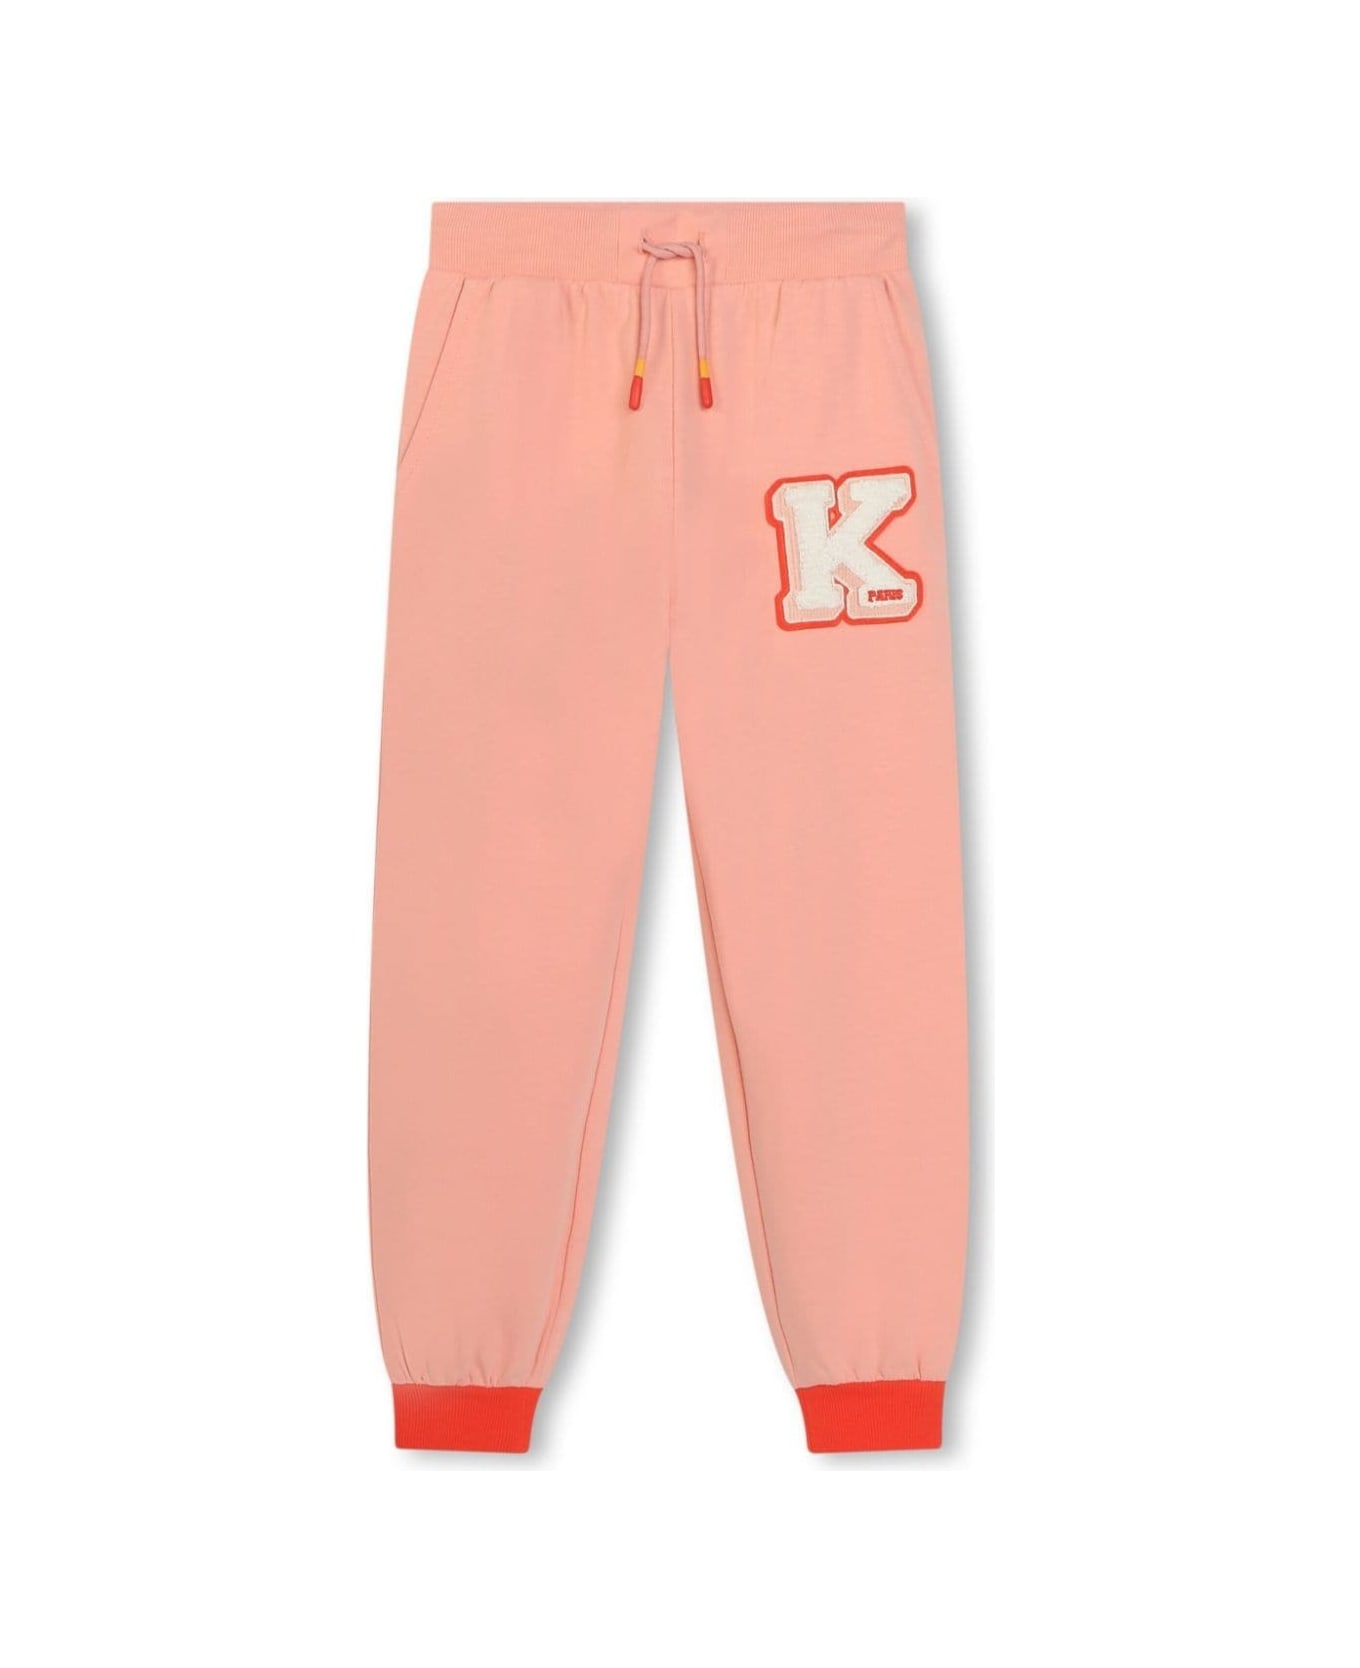 Kenzo Kids K6020643g - Pink